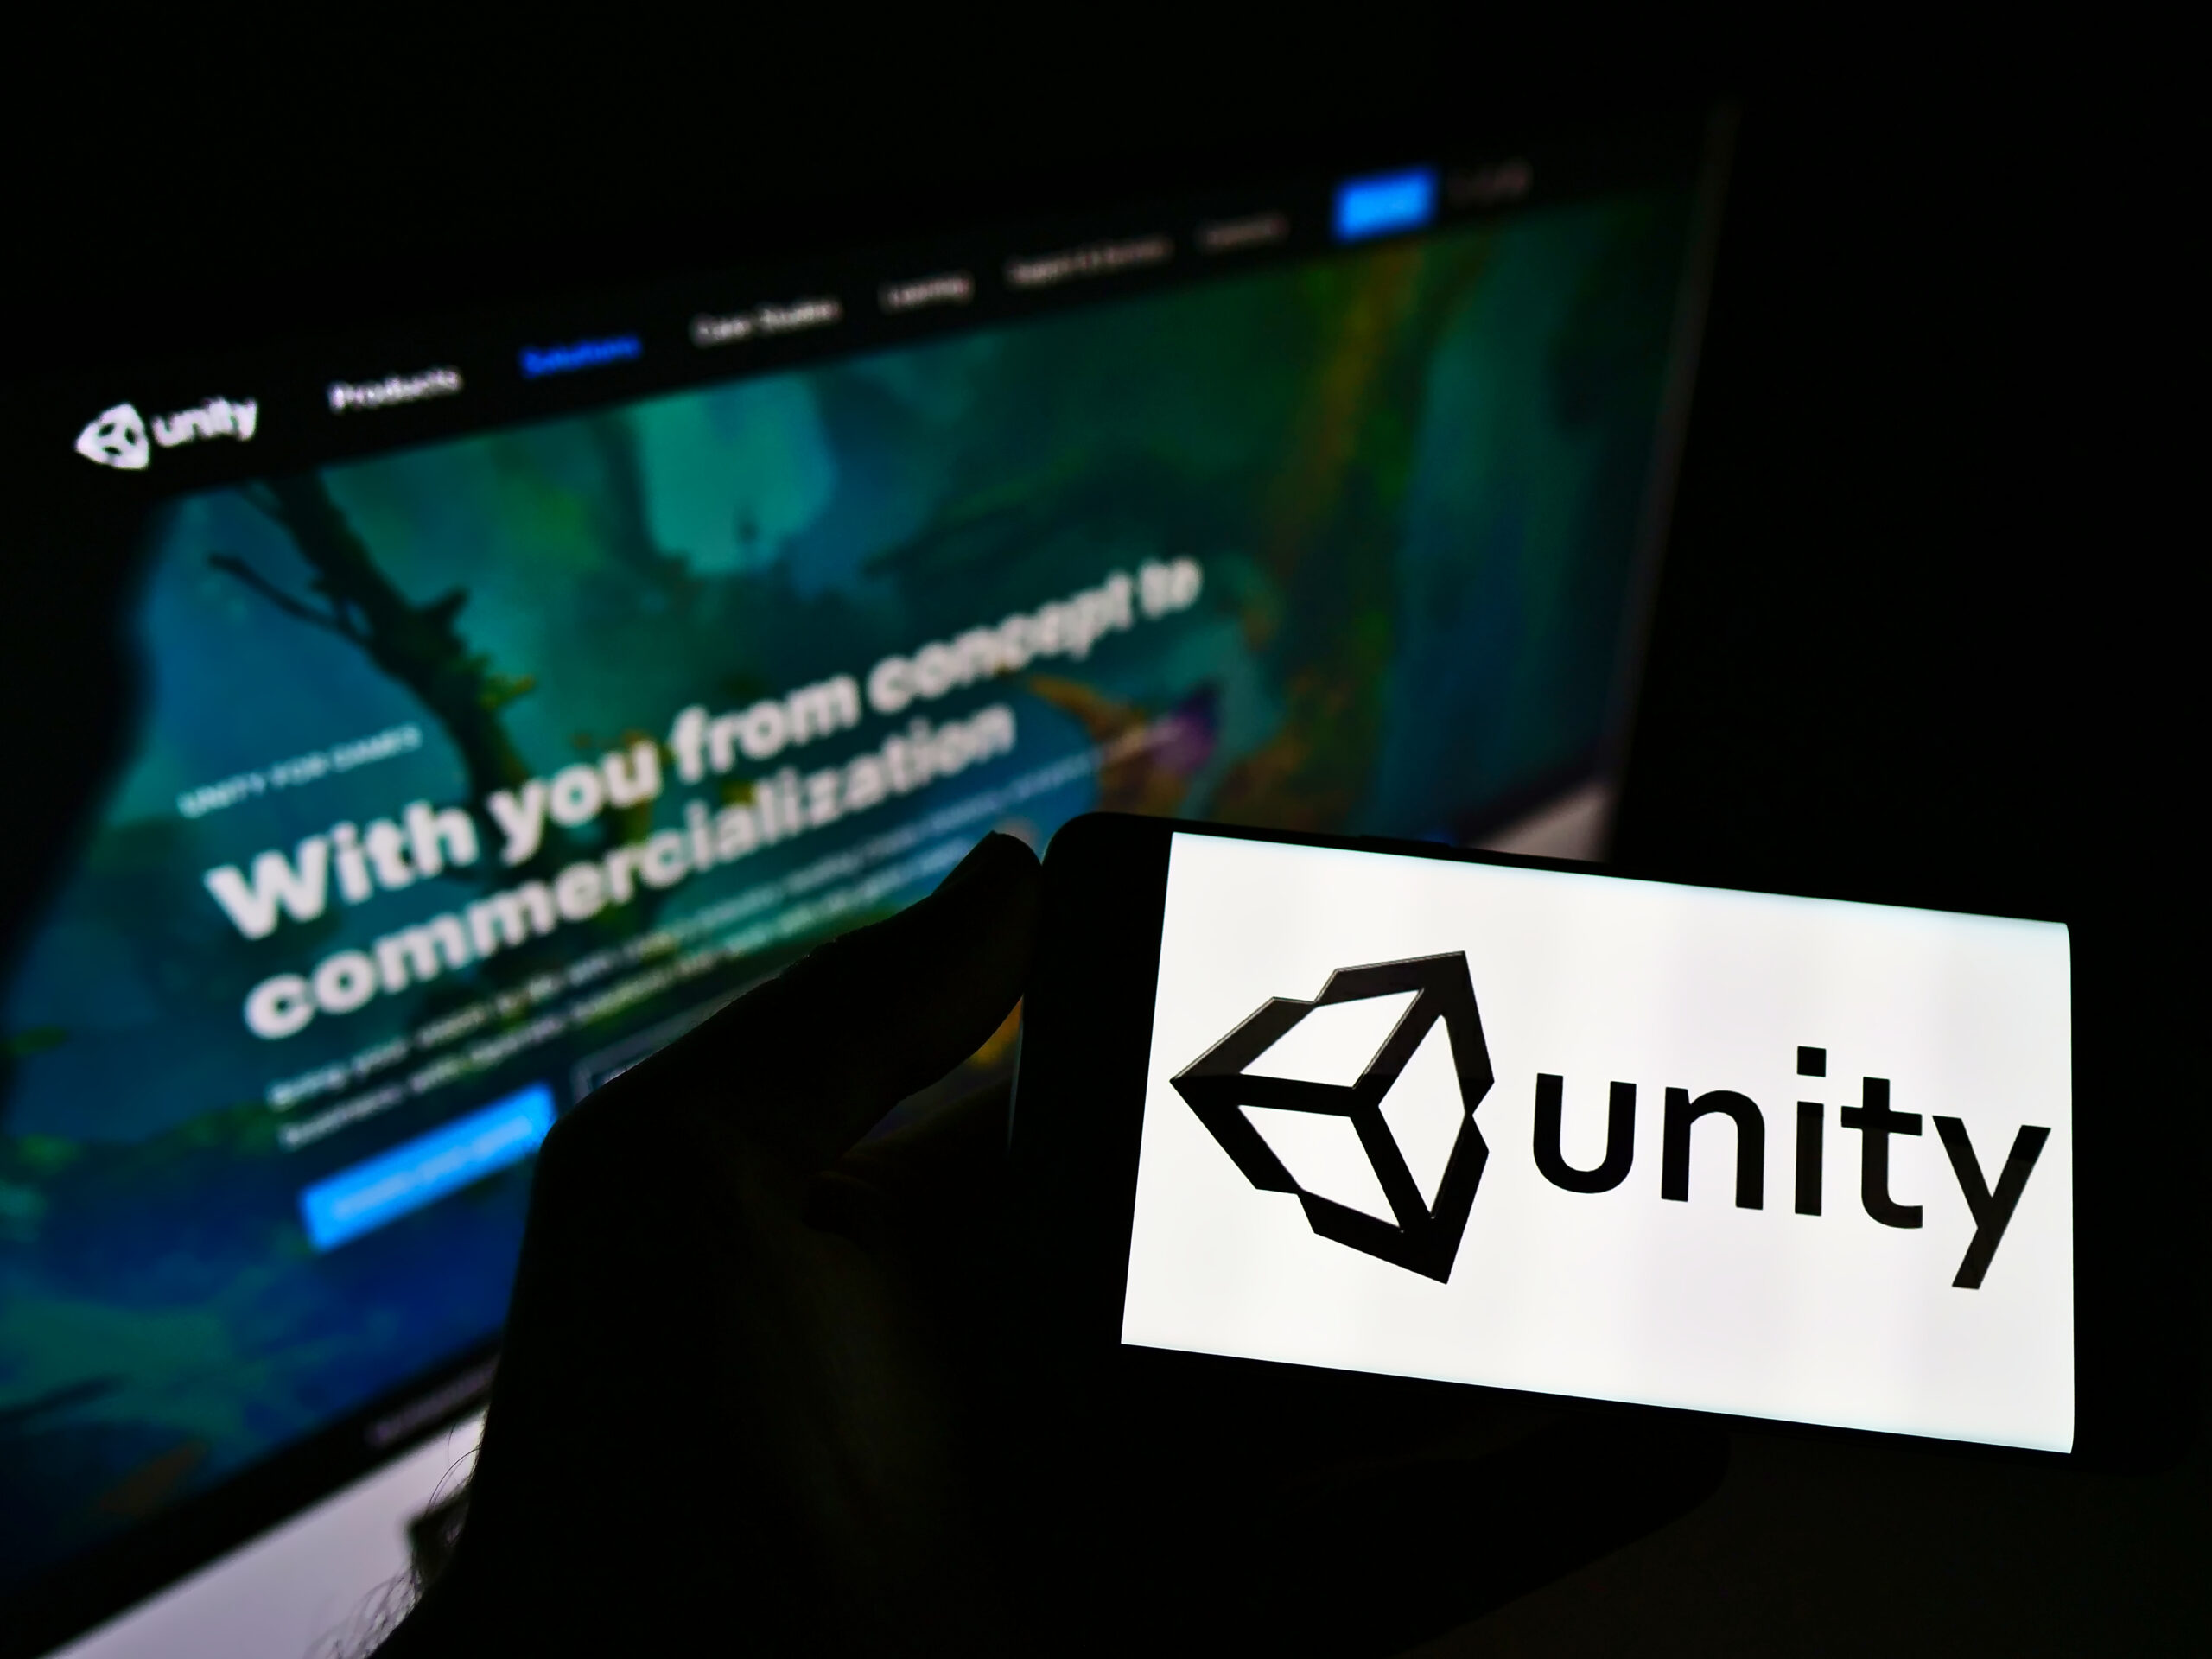 Imagem mostra logotipo da Unity em um smartphone